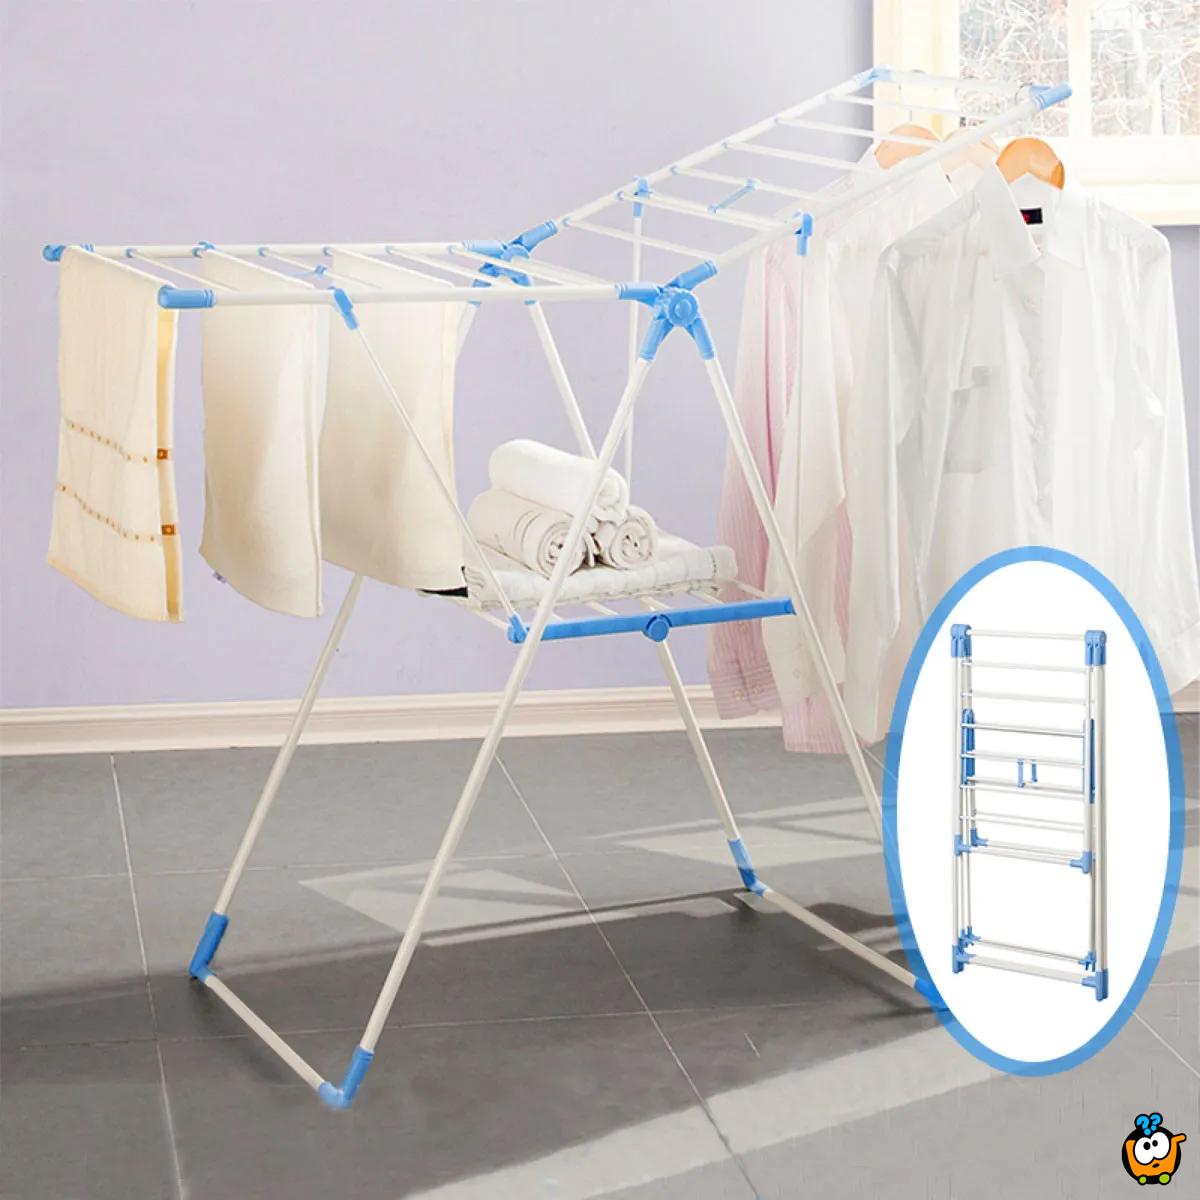 Clothes Drying Rack – Praktična sklopiva sušilica za odecu